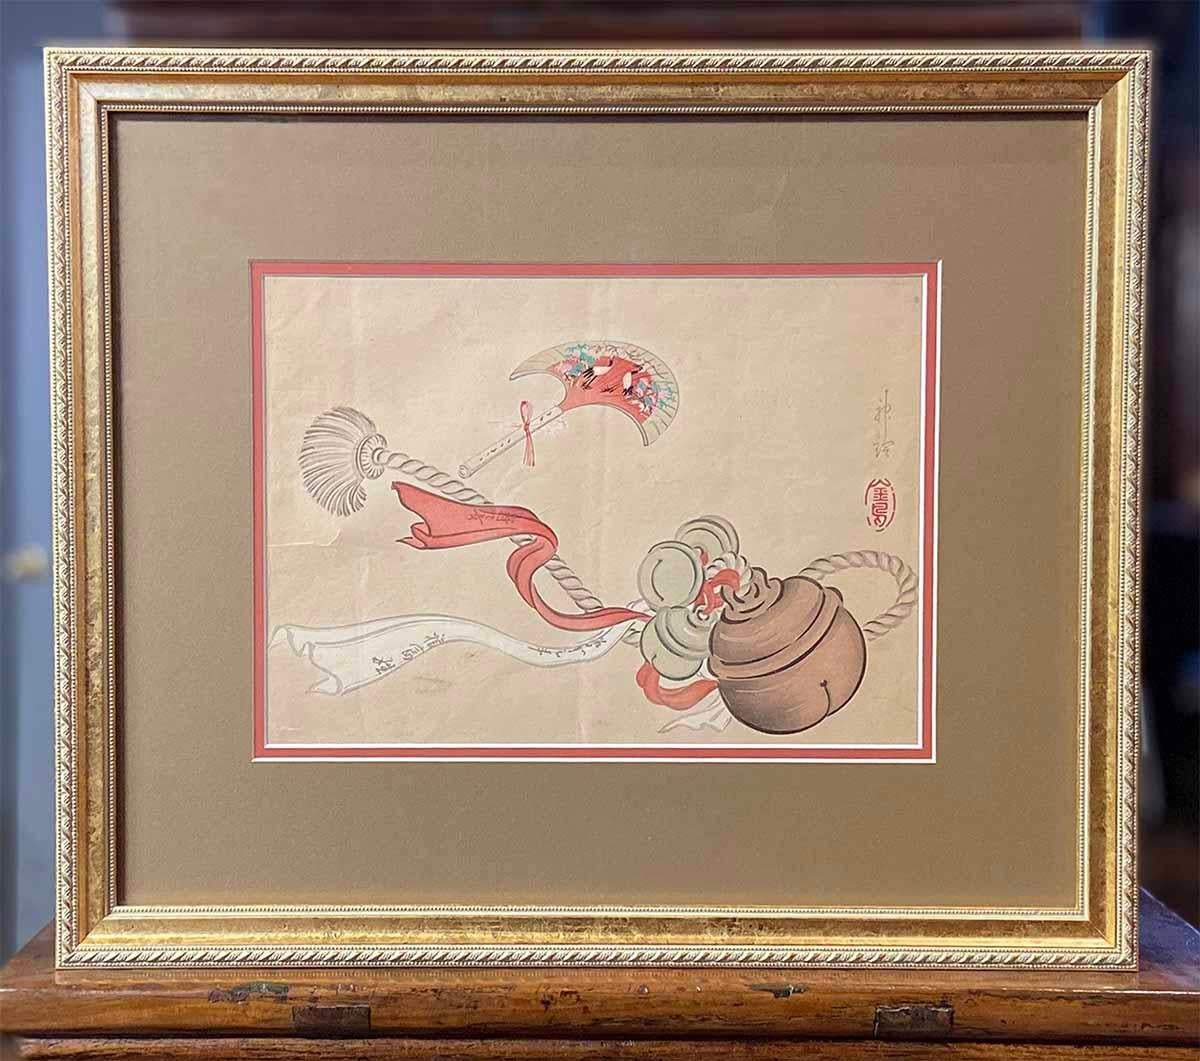 Ein antiker japanischer Farbholzschnitt aus dem 19. Jahrhundert, der eine zeremonielle Quaste darstellt. Dieser im 19. Jahrhundert in Japan entstandene Farbholzschnitt zieht unsere Aufmerksamkeit durch die Darstellung von zeremoniellen Gegenständen